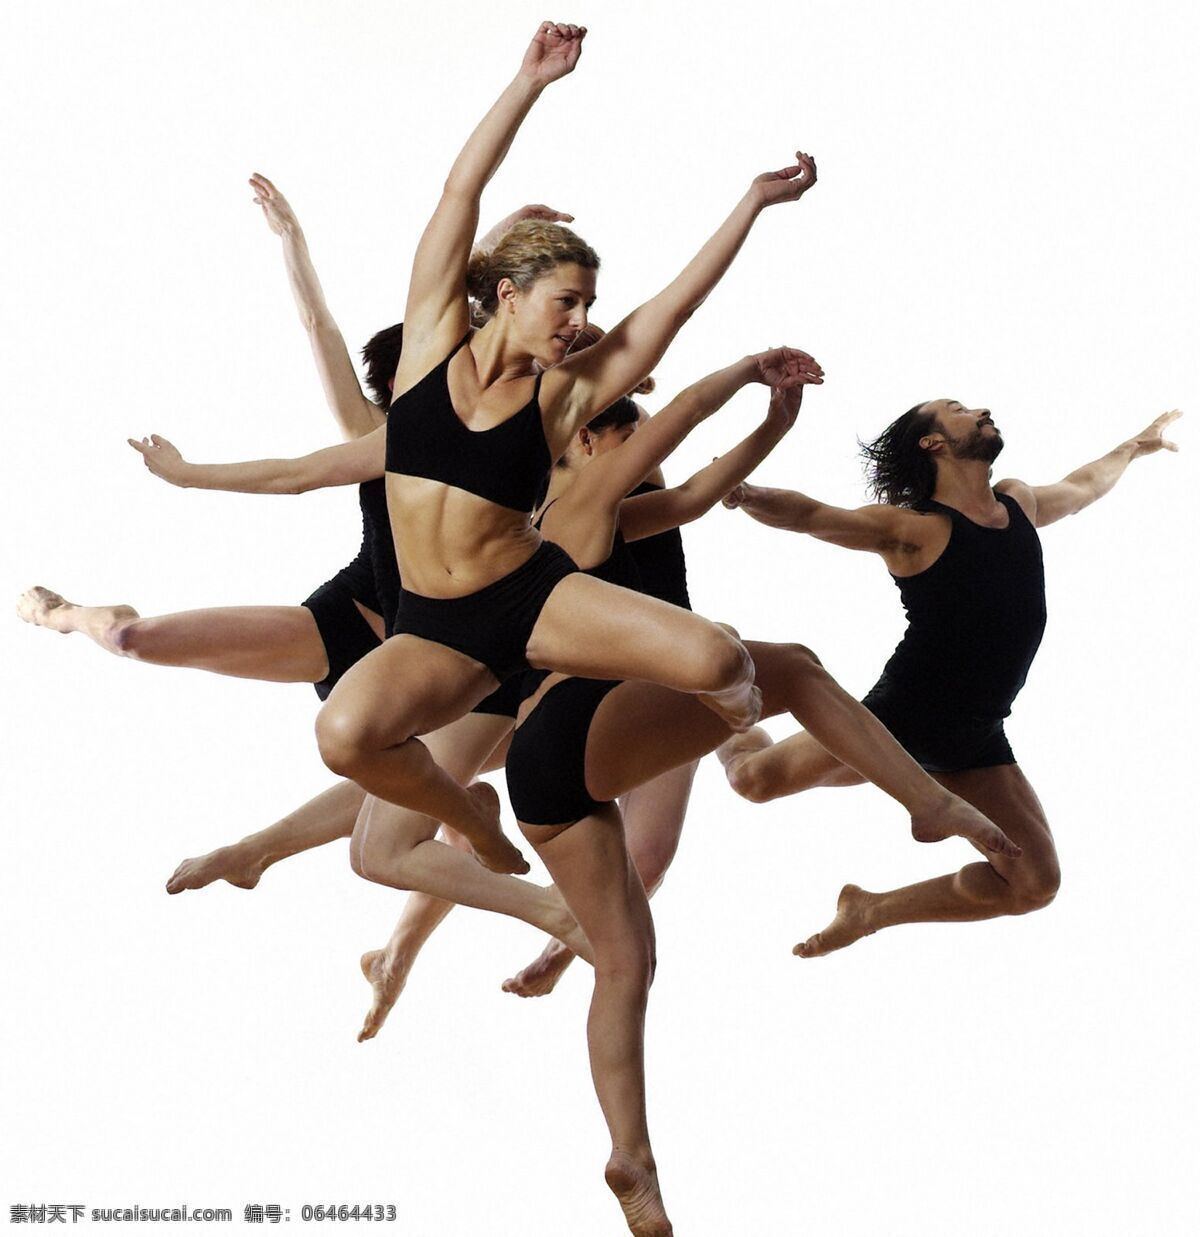 芭蕾 高雅 光影 男性 女性 室内 跳跃 舞蹈人物 舞者 舞蹈 舞姿 舞鞋 ballet 艺术 优雅 西方 jump leap 舞蹈音乐 文化艺术 psd源文件